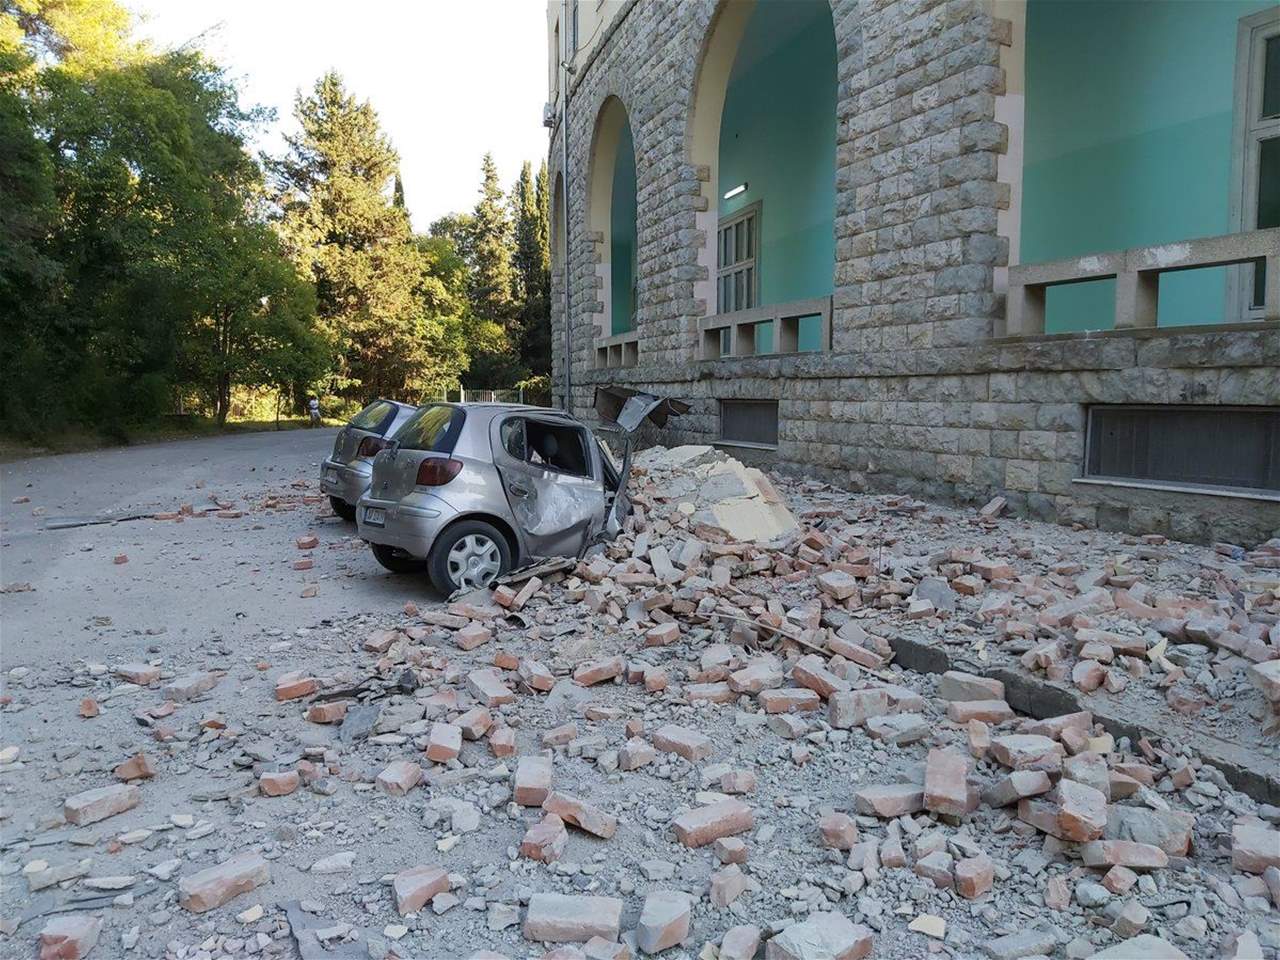  زلزال بقوة 6,4 درجات ضرب ألبانيا وادى إلى انهيار مبنى